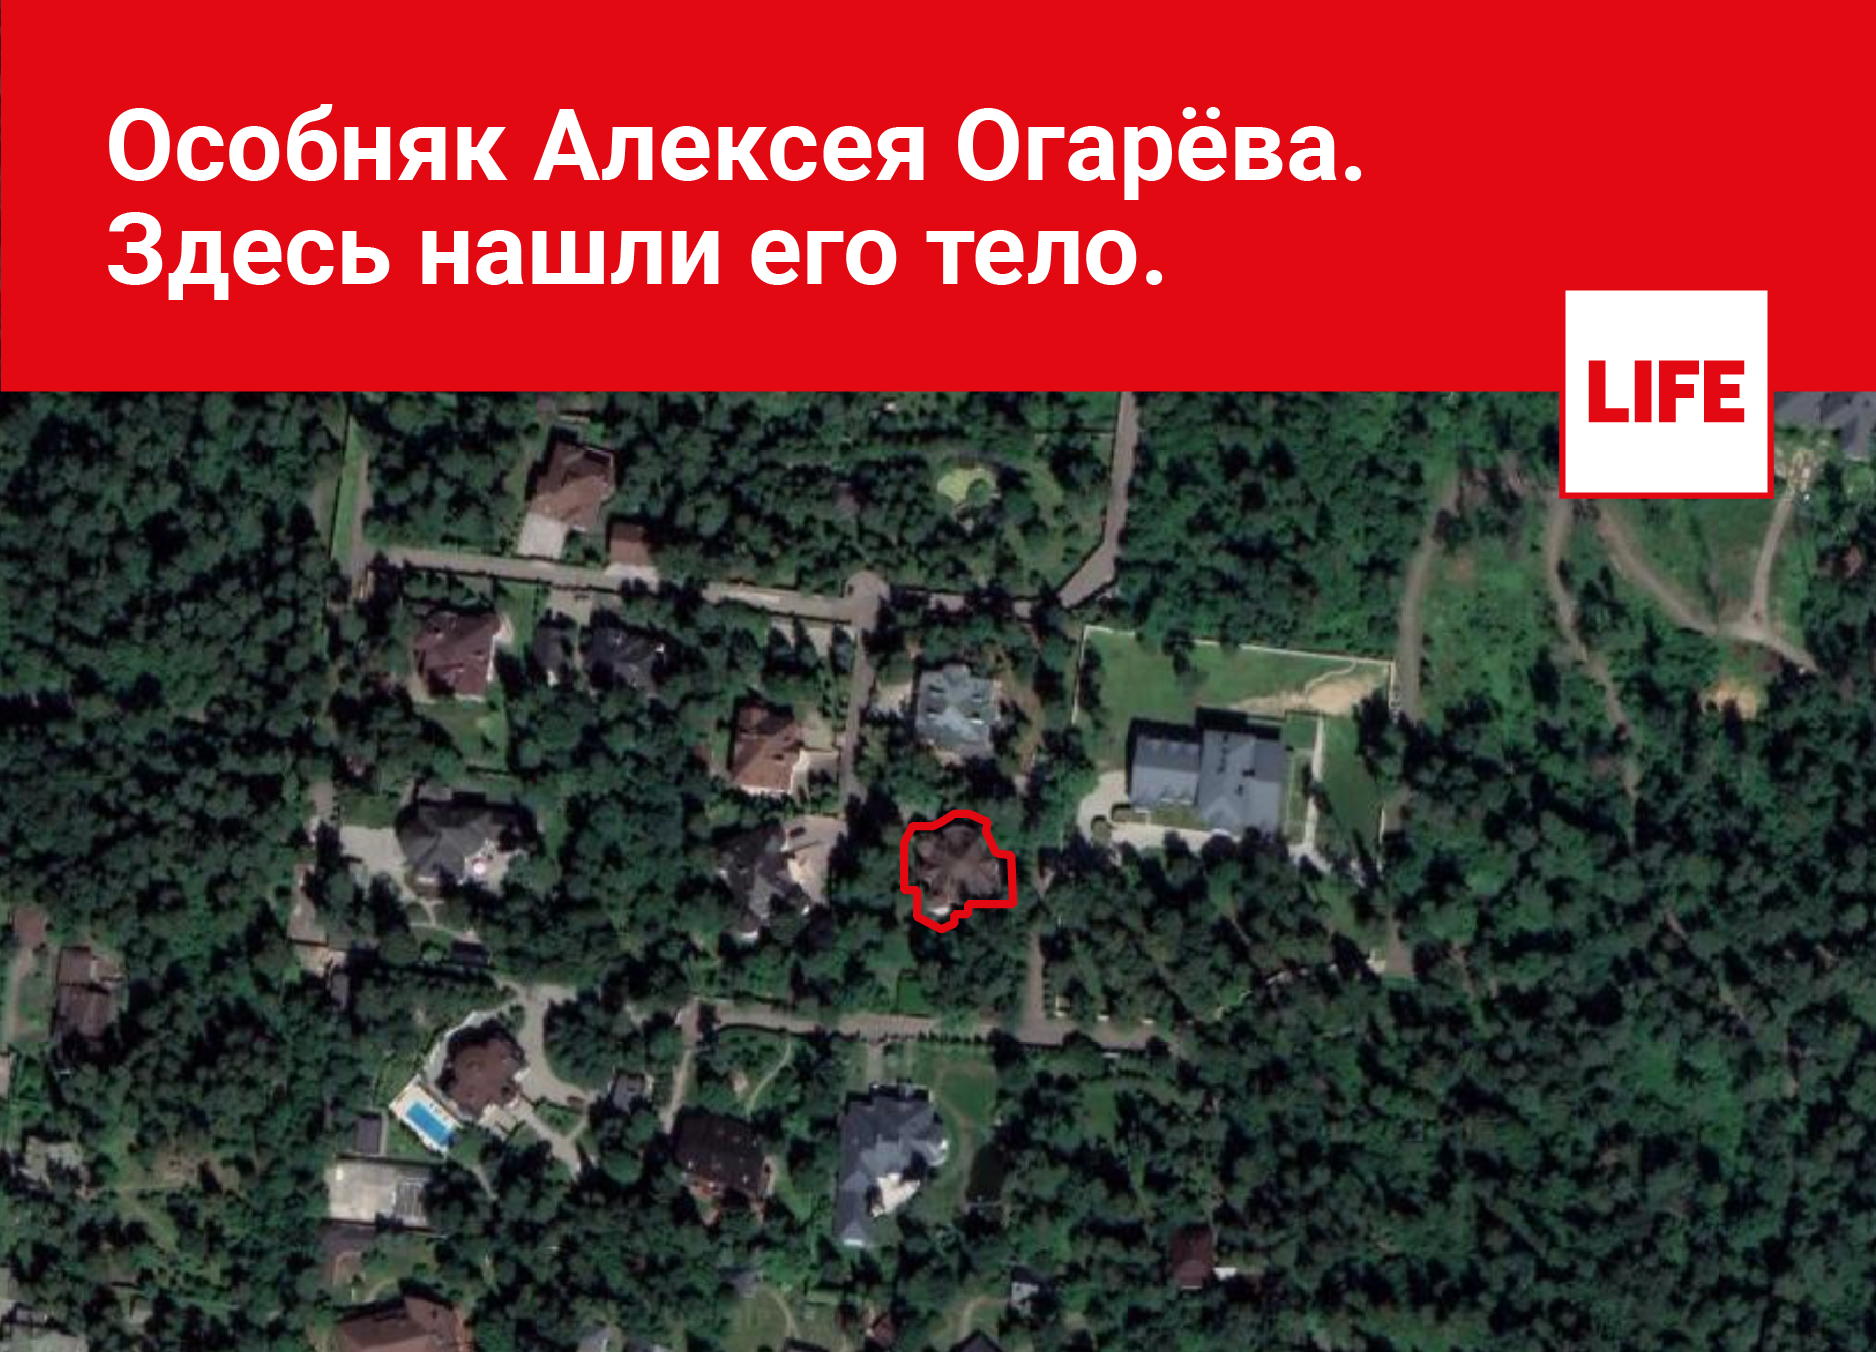 Особняк Алексея Огарёва находится на Рублёво-Успенском шоссе в Горках-2, в элитном посёлке "Балатон". Здесь нашли тело. Фото © Google Maps